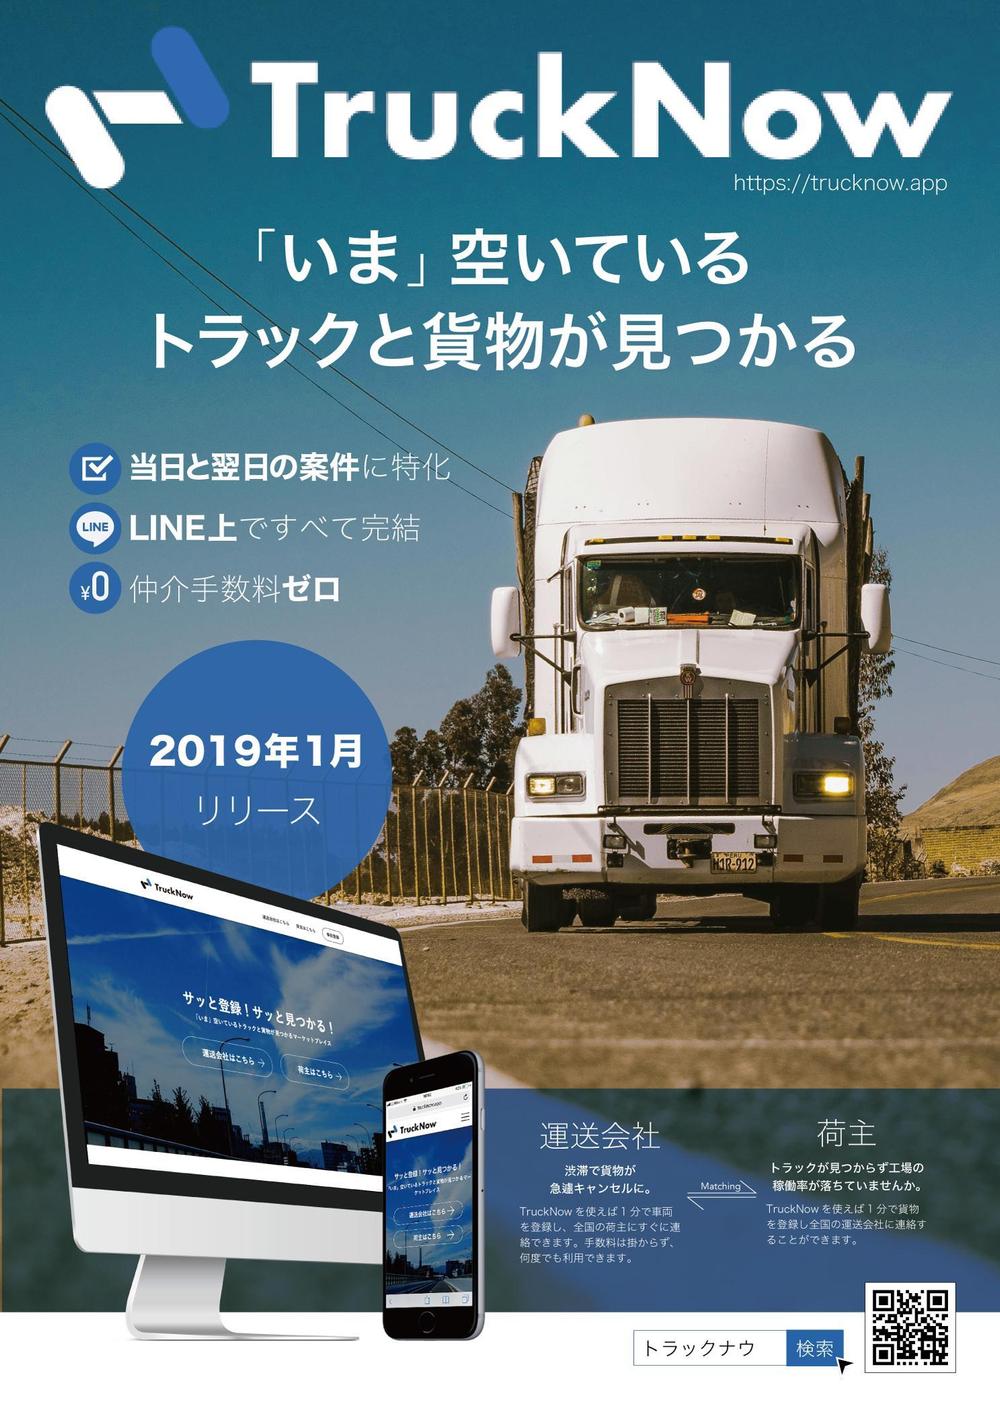 貨物トラックマッチングサービス「TruckNow」のリリースチラシ